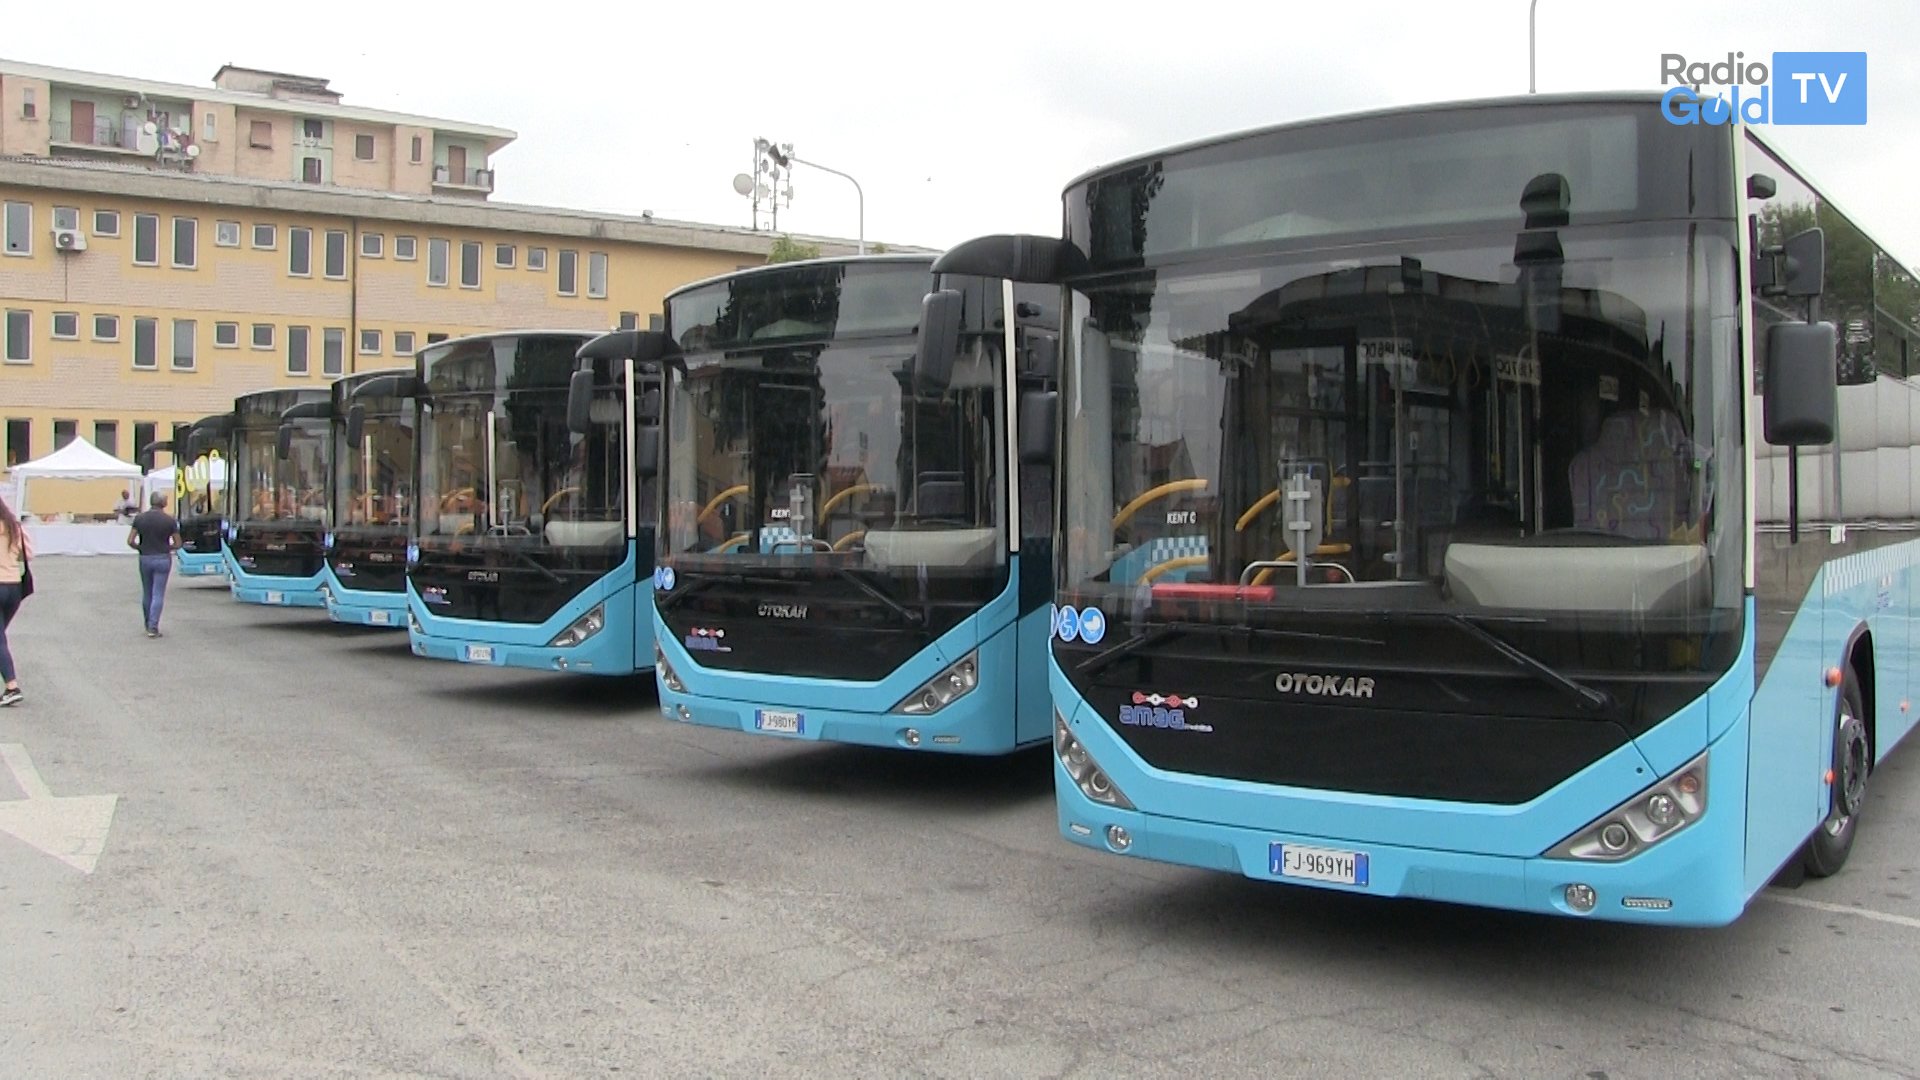 7 nuovi bus e sì al servizio disabili. Sul contratto “no tempi lunghi”